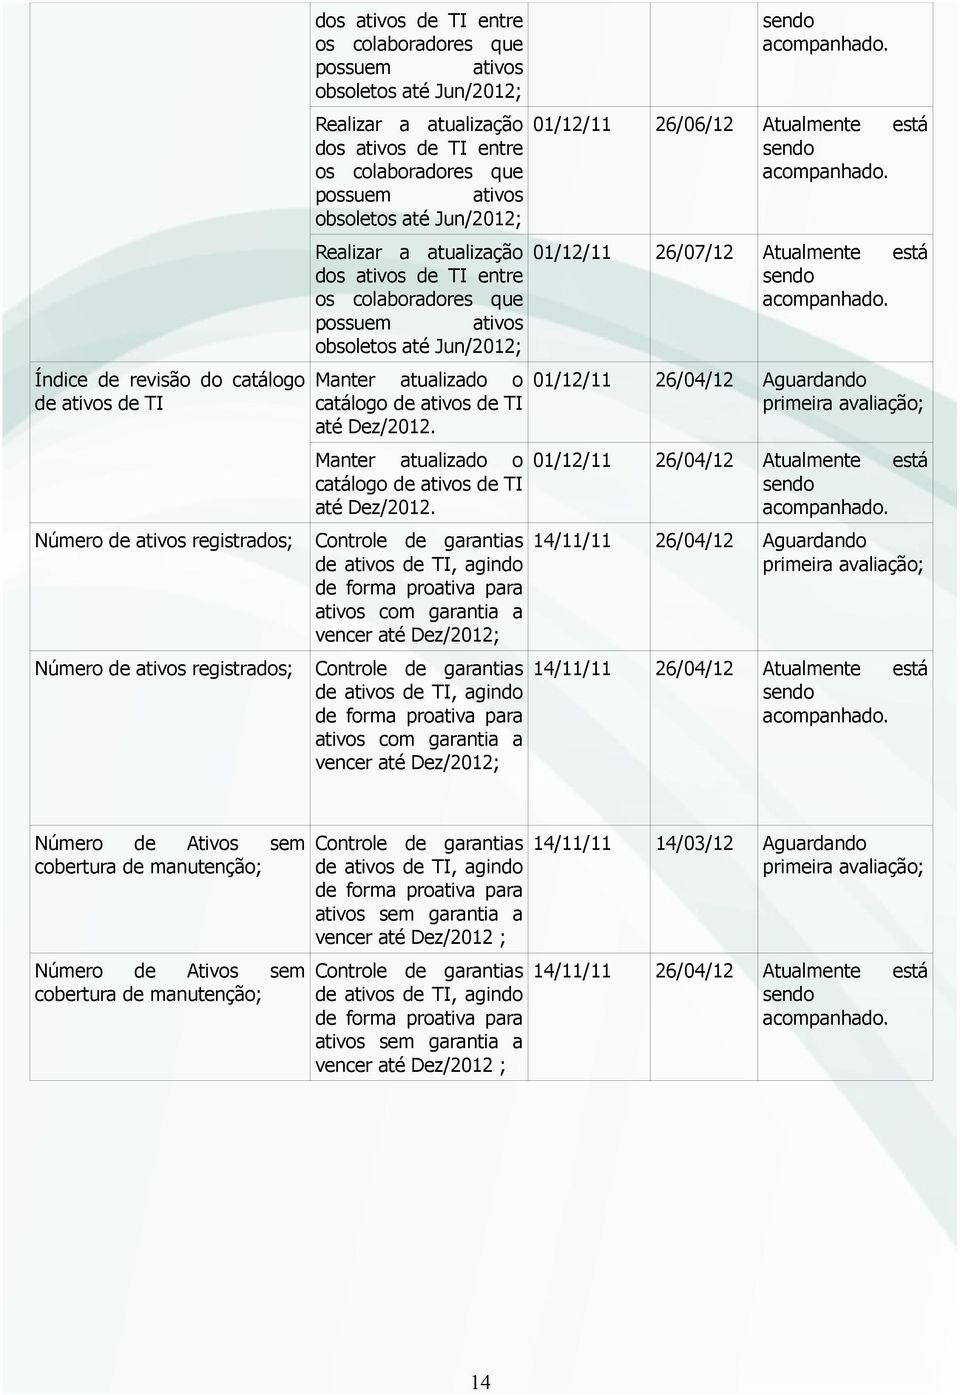 Jun/2012; Manter atualizado o catálogo de ativos de TI até Dez/2012.